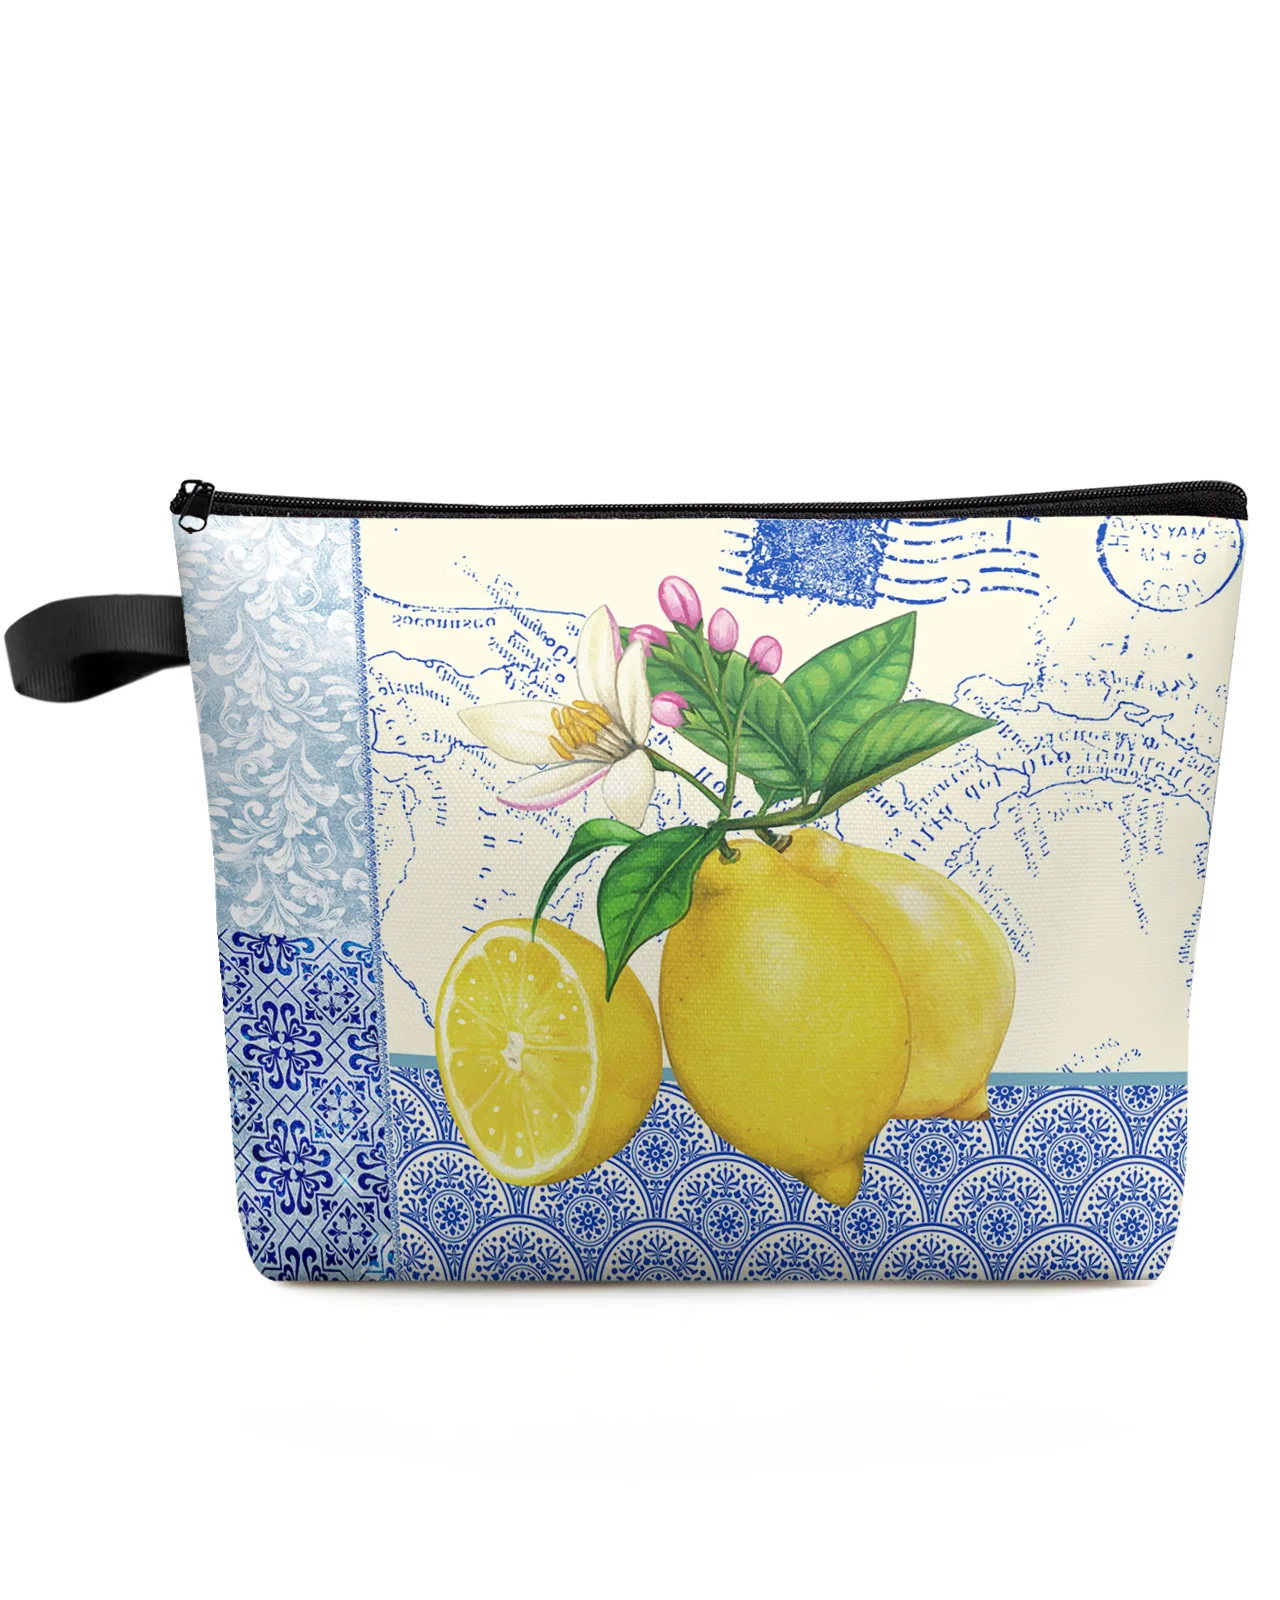 

Blue And White Porcelain Texture Map Lemon Makeup Bag Pouch Travel Essentials Women Cosmetic Bags Organizer Storage Pencil Case